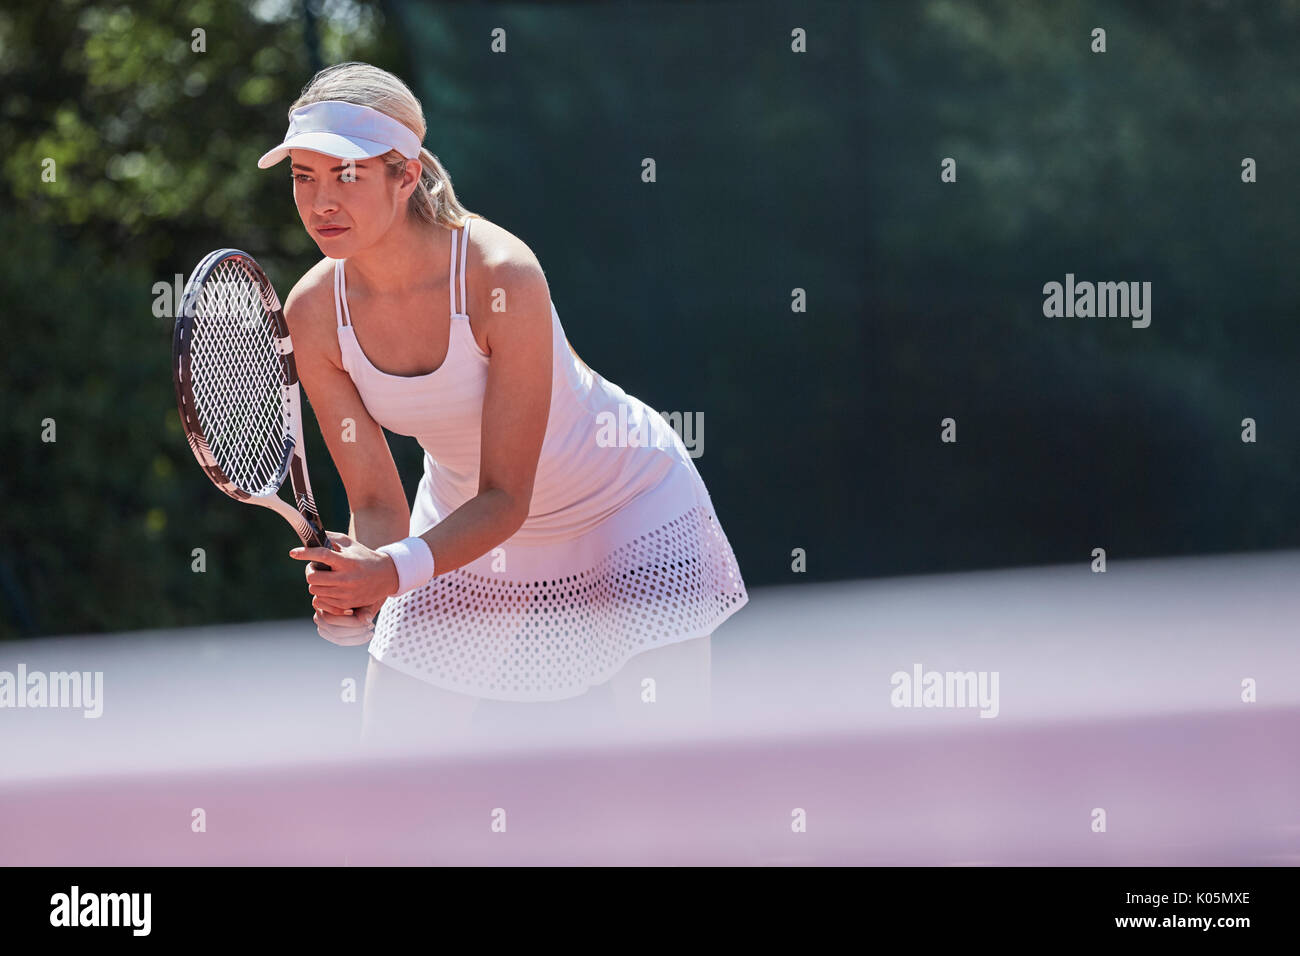 Centrado joven jugador de tenis femenino listo, celebración de raqueta de tenis en la cancha de tenis soleada Foto de stock